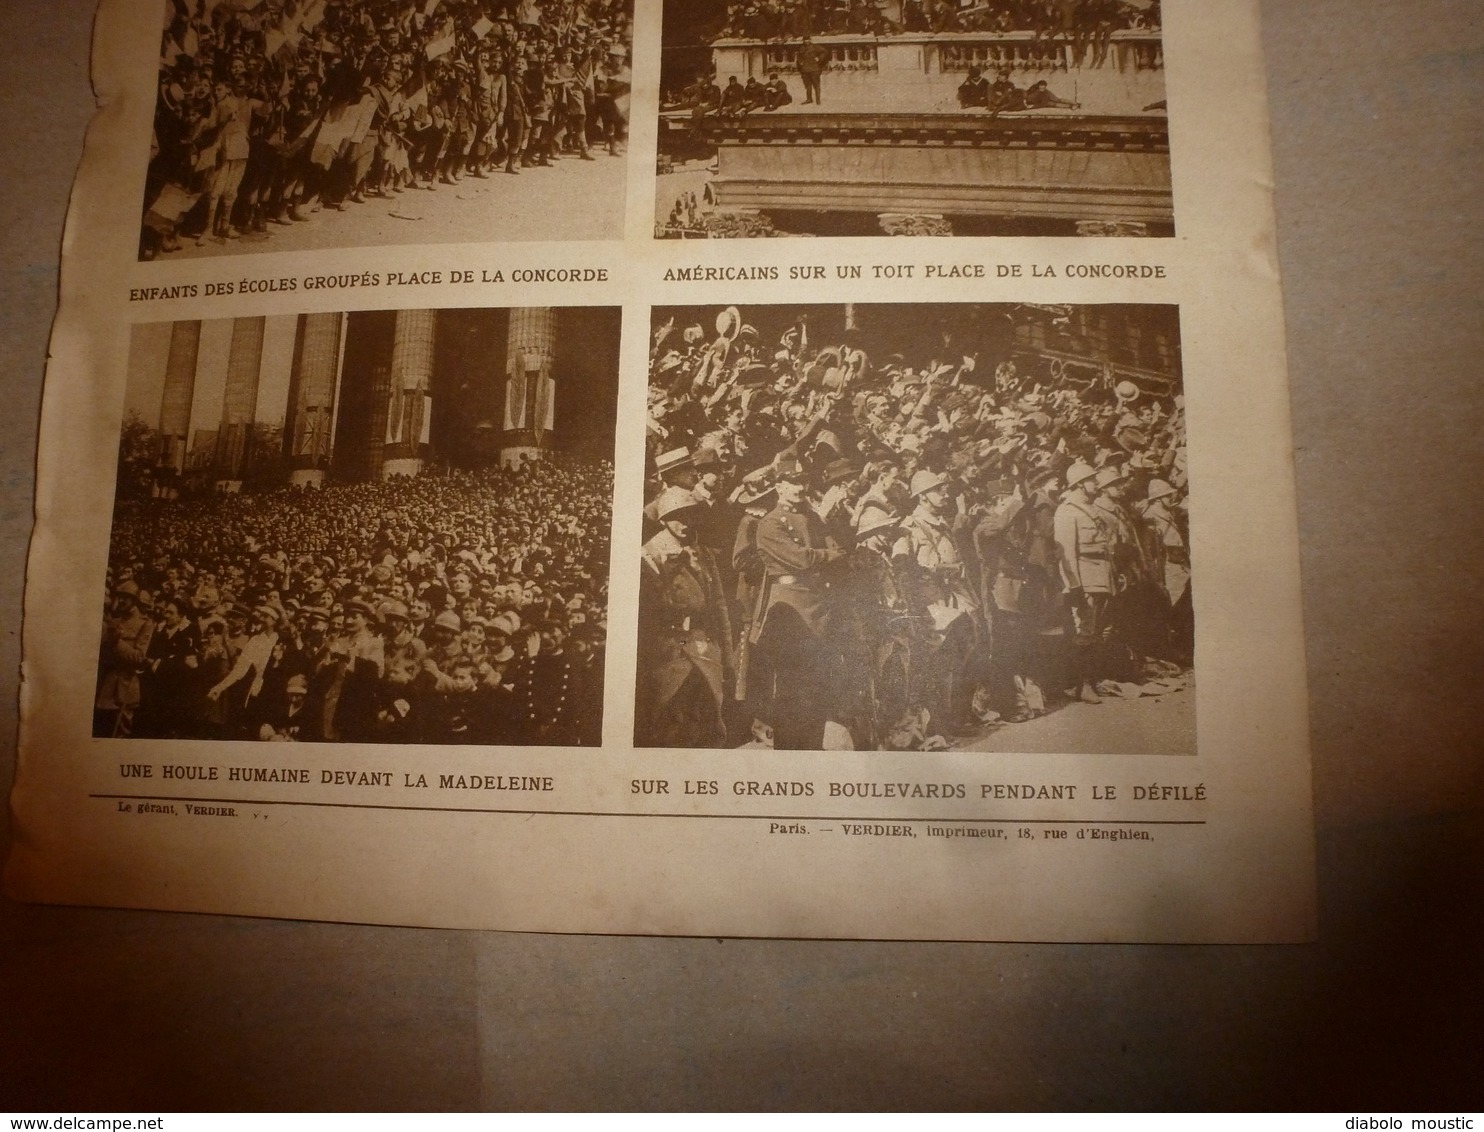 1919 LE MIROIR: Immense Cénotaphe à l'Arc de Triomphe avec les goumiers algériens,marocains et délégations alliées;etc